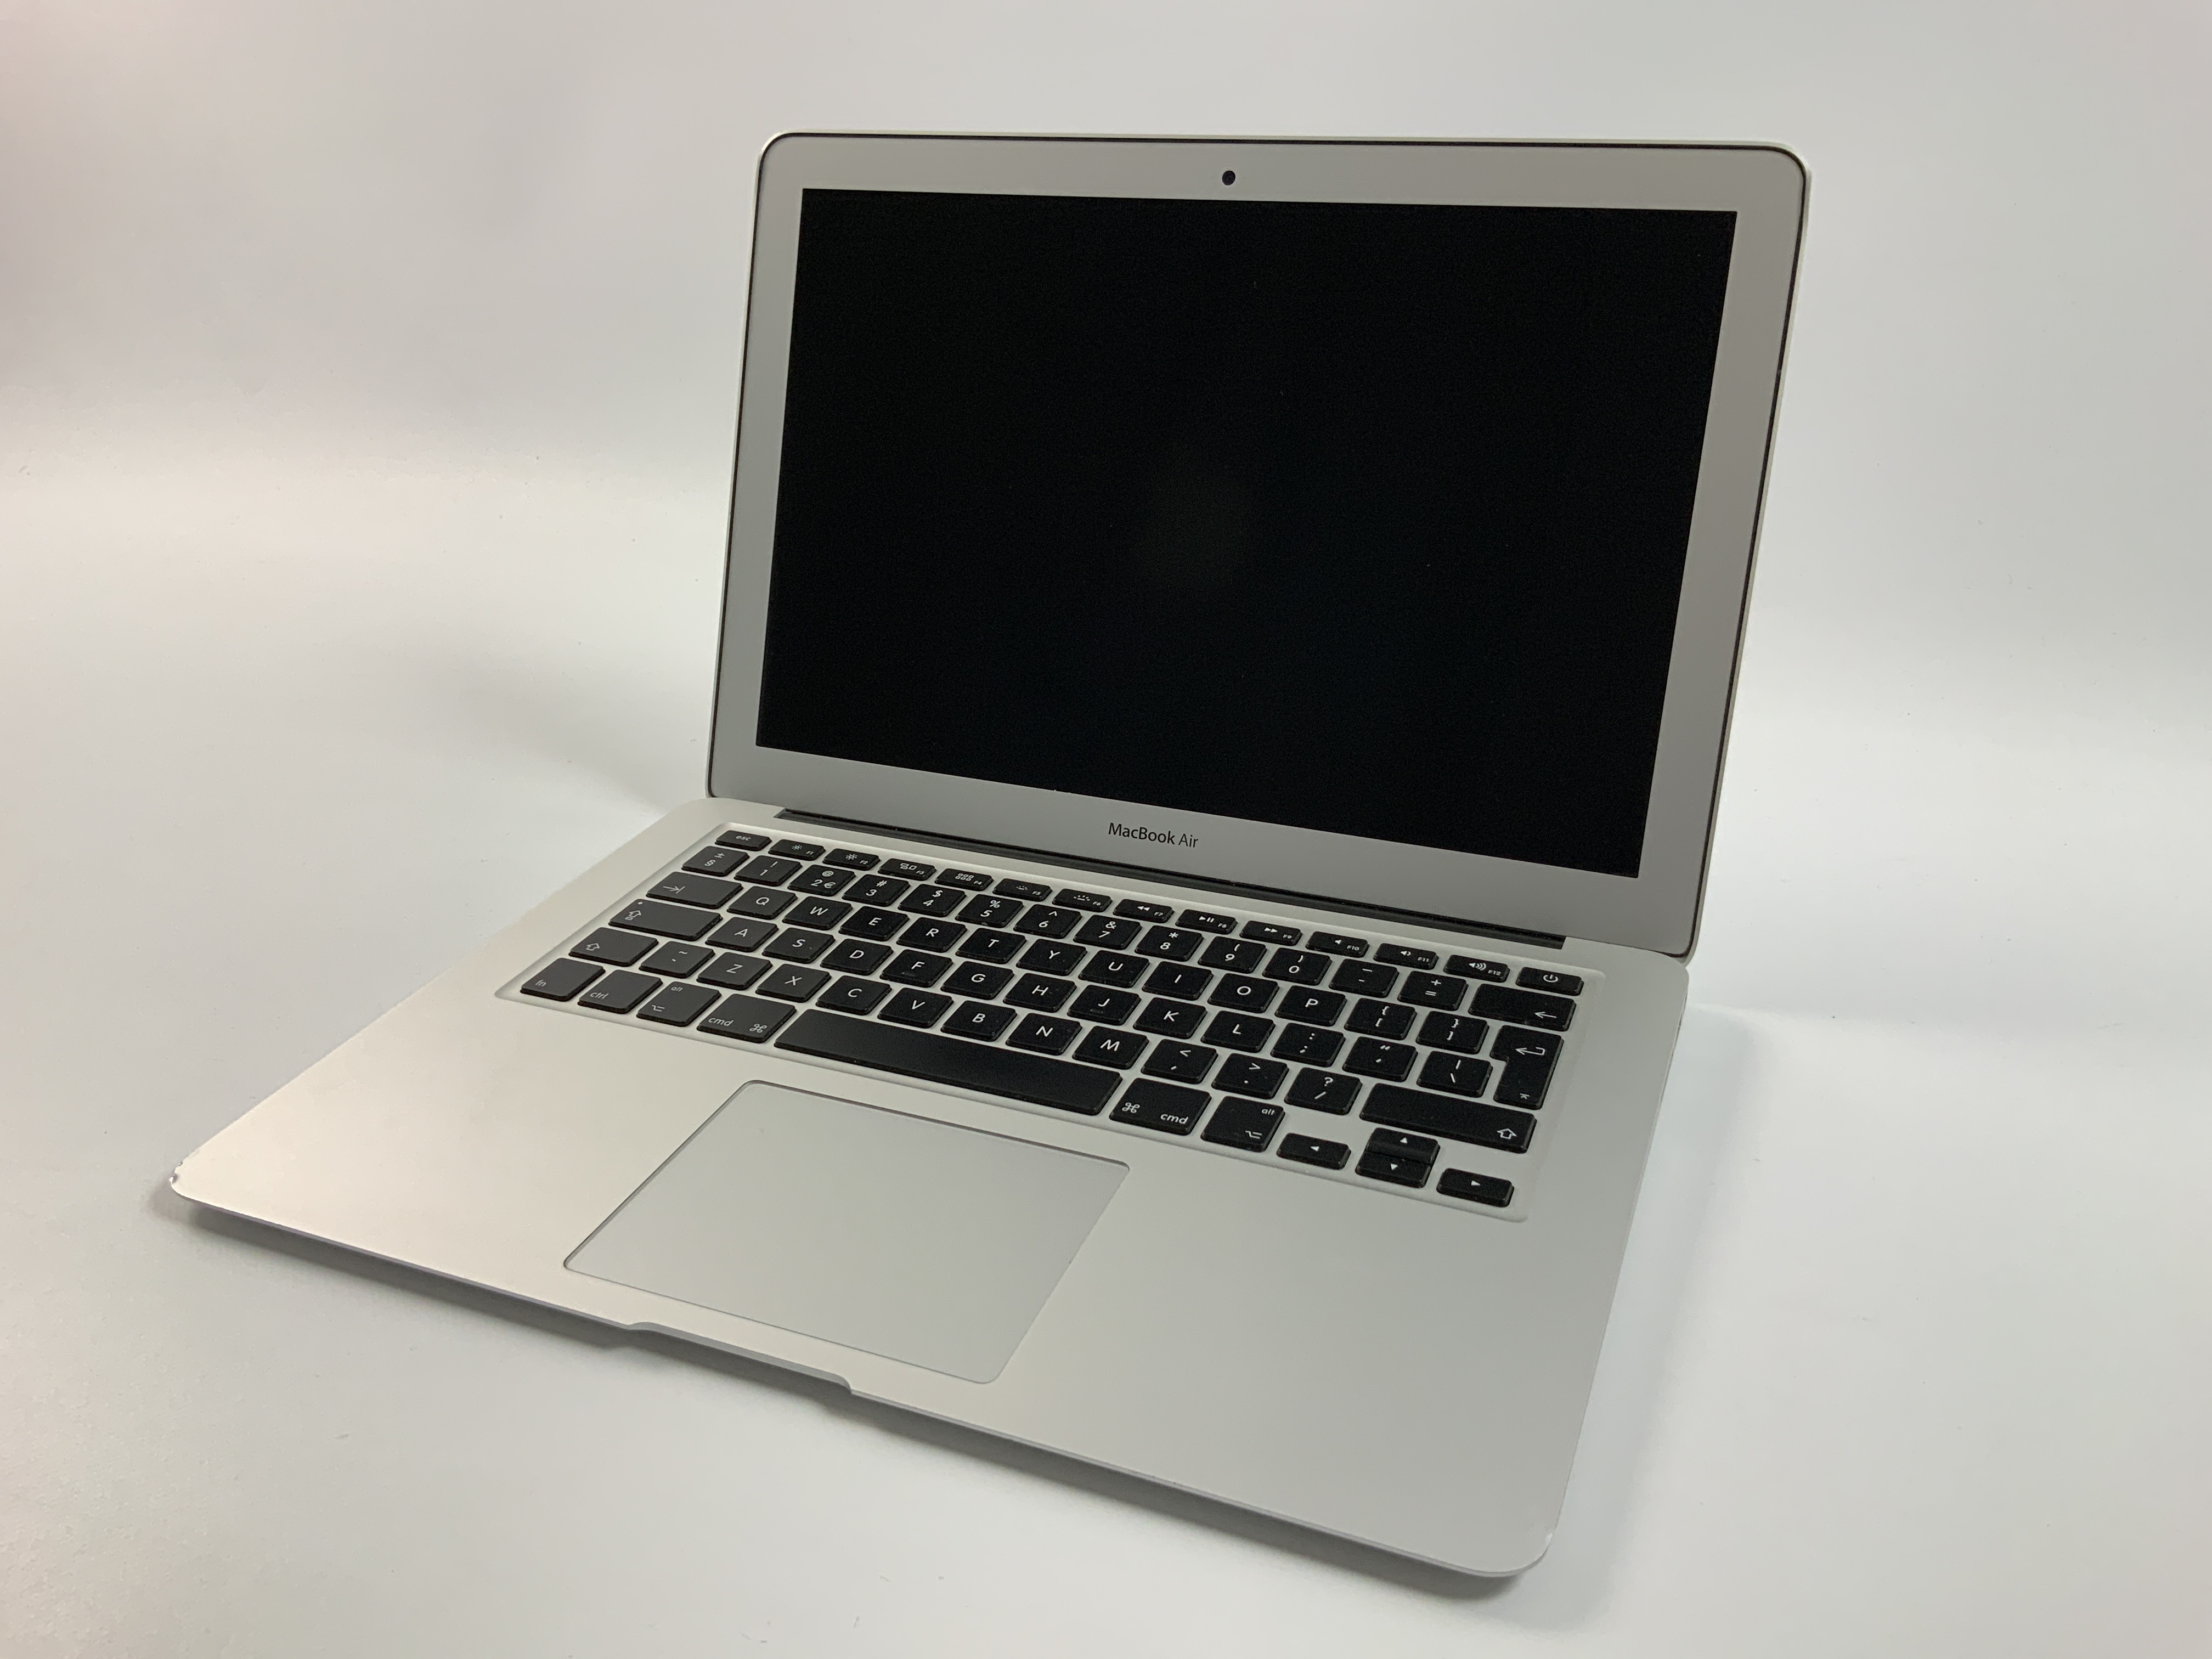 MacBook Air 13" Mid 2017 (Intel Core i5 1.8 GHz 8 GB RAM 128 GB SSD), Intel Core i5 1.8 GHz, 8 GB RAM, 128 GB SSD, Afbeelding 1